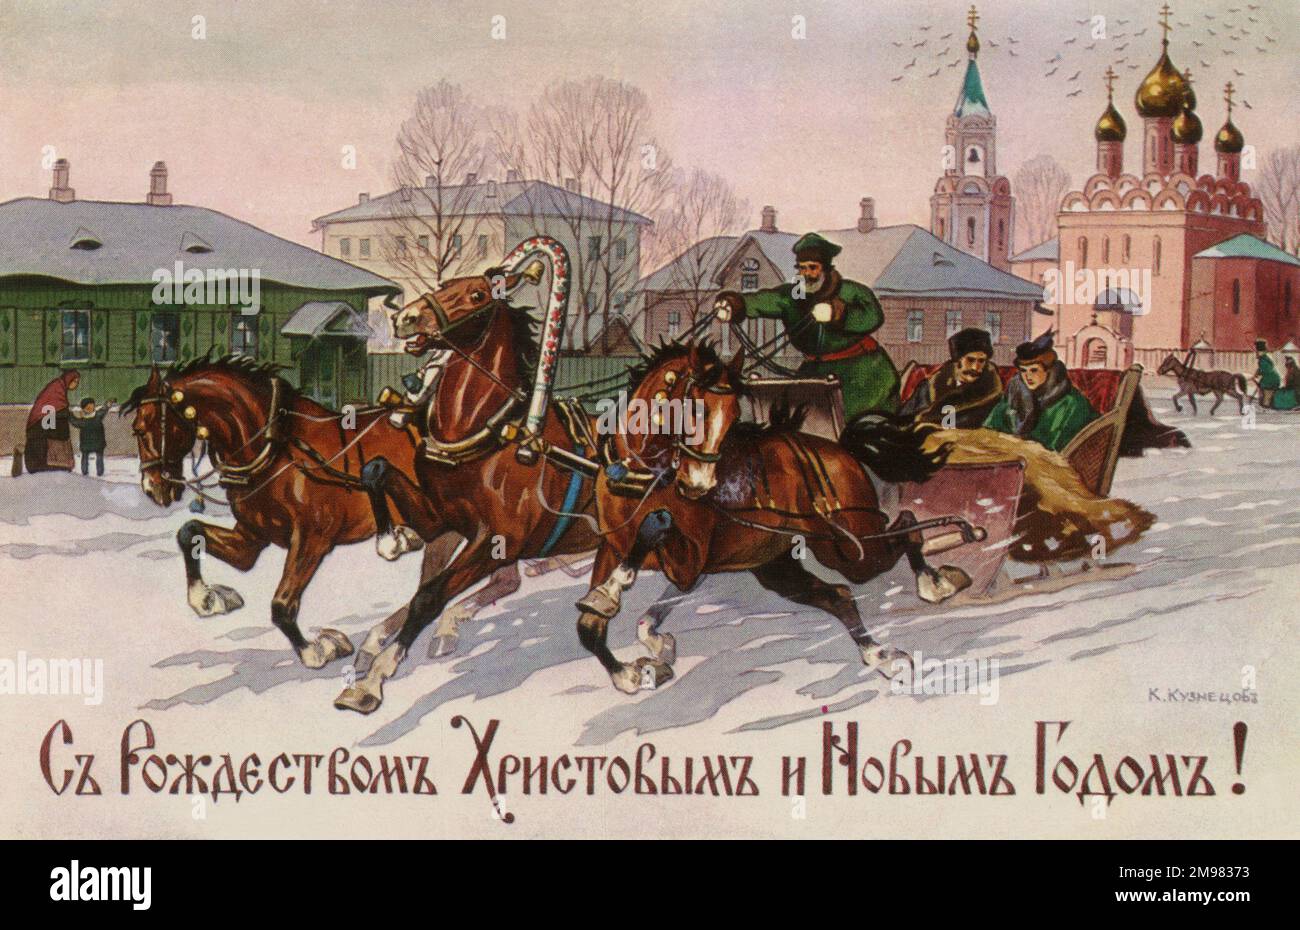 Eine Troika – eine traditionelle russische Kombination für die Fahrt mit drei Pferden, die in der Regel einen Schlitten ziehen (wie auf dieser Karte). Stockfoto